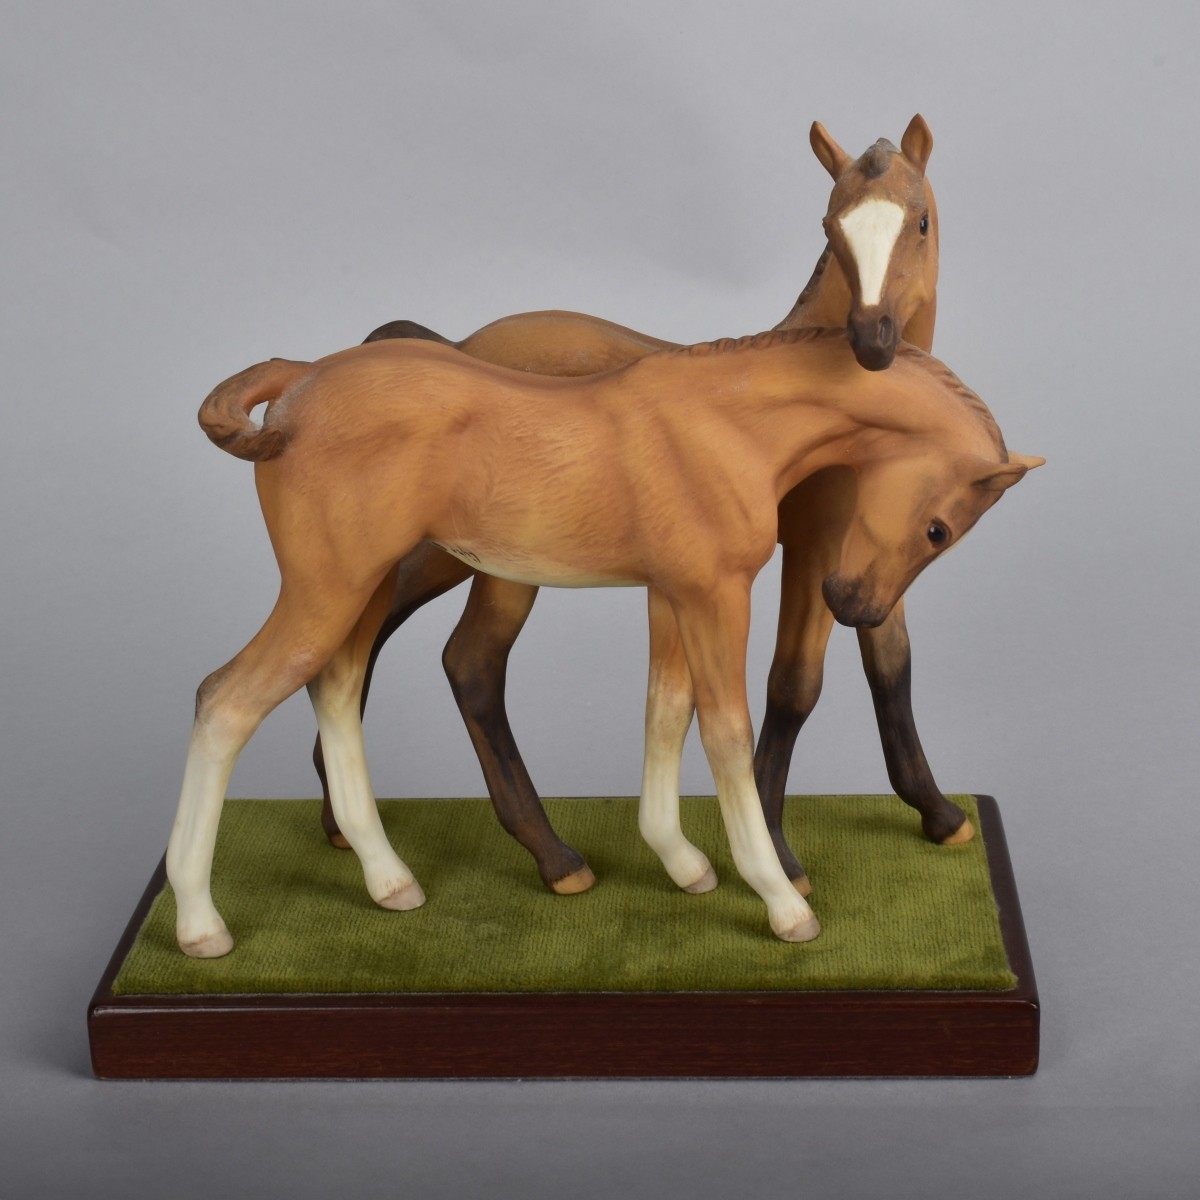 Cybis "Colts" Porcelain Figurine